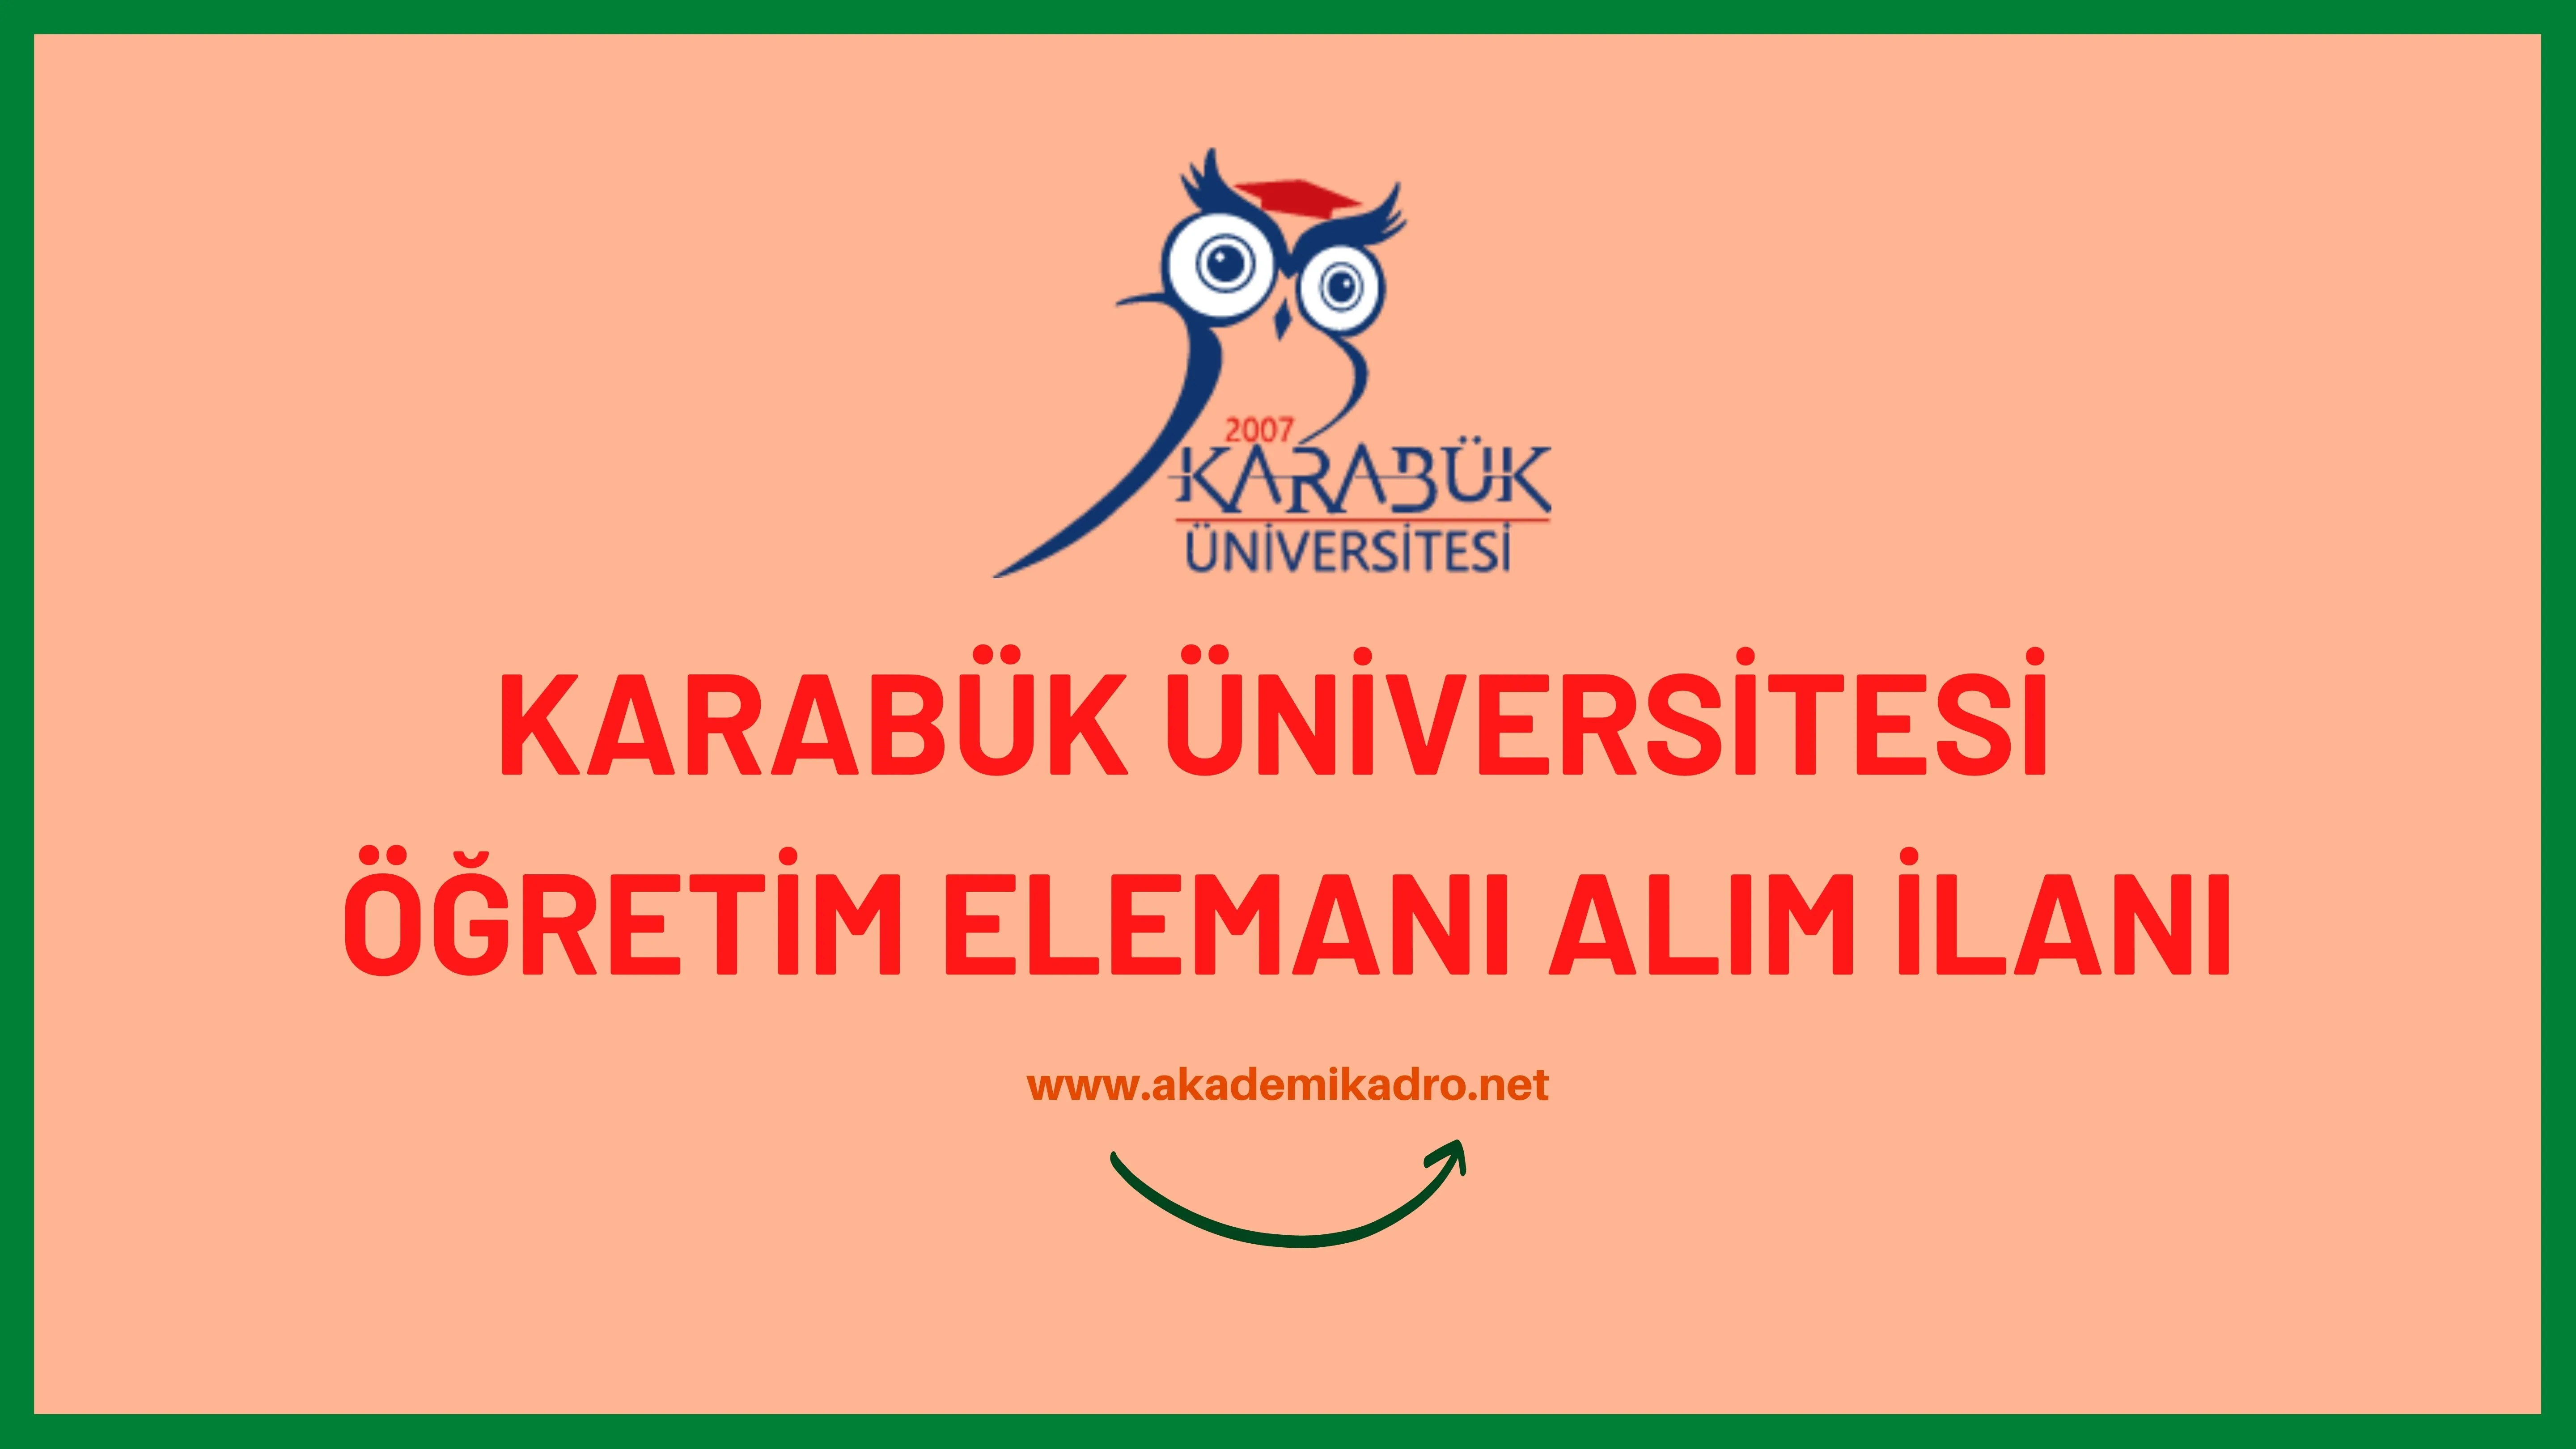 Karabük Üniversitesi 8 Araştırma görevlisi ve 6 Öğretim görevlisi alacaktır. Son başvuru tarihi 12 Aralık 2022